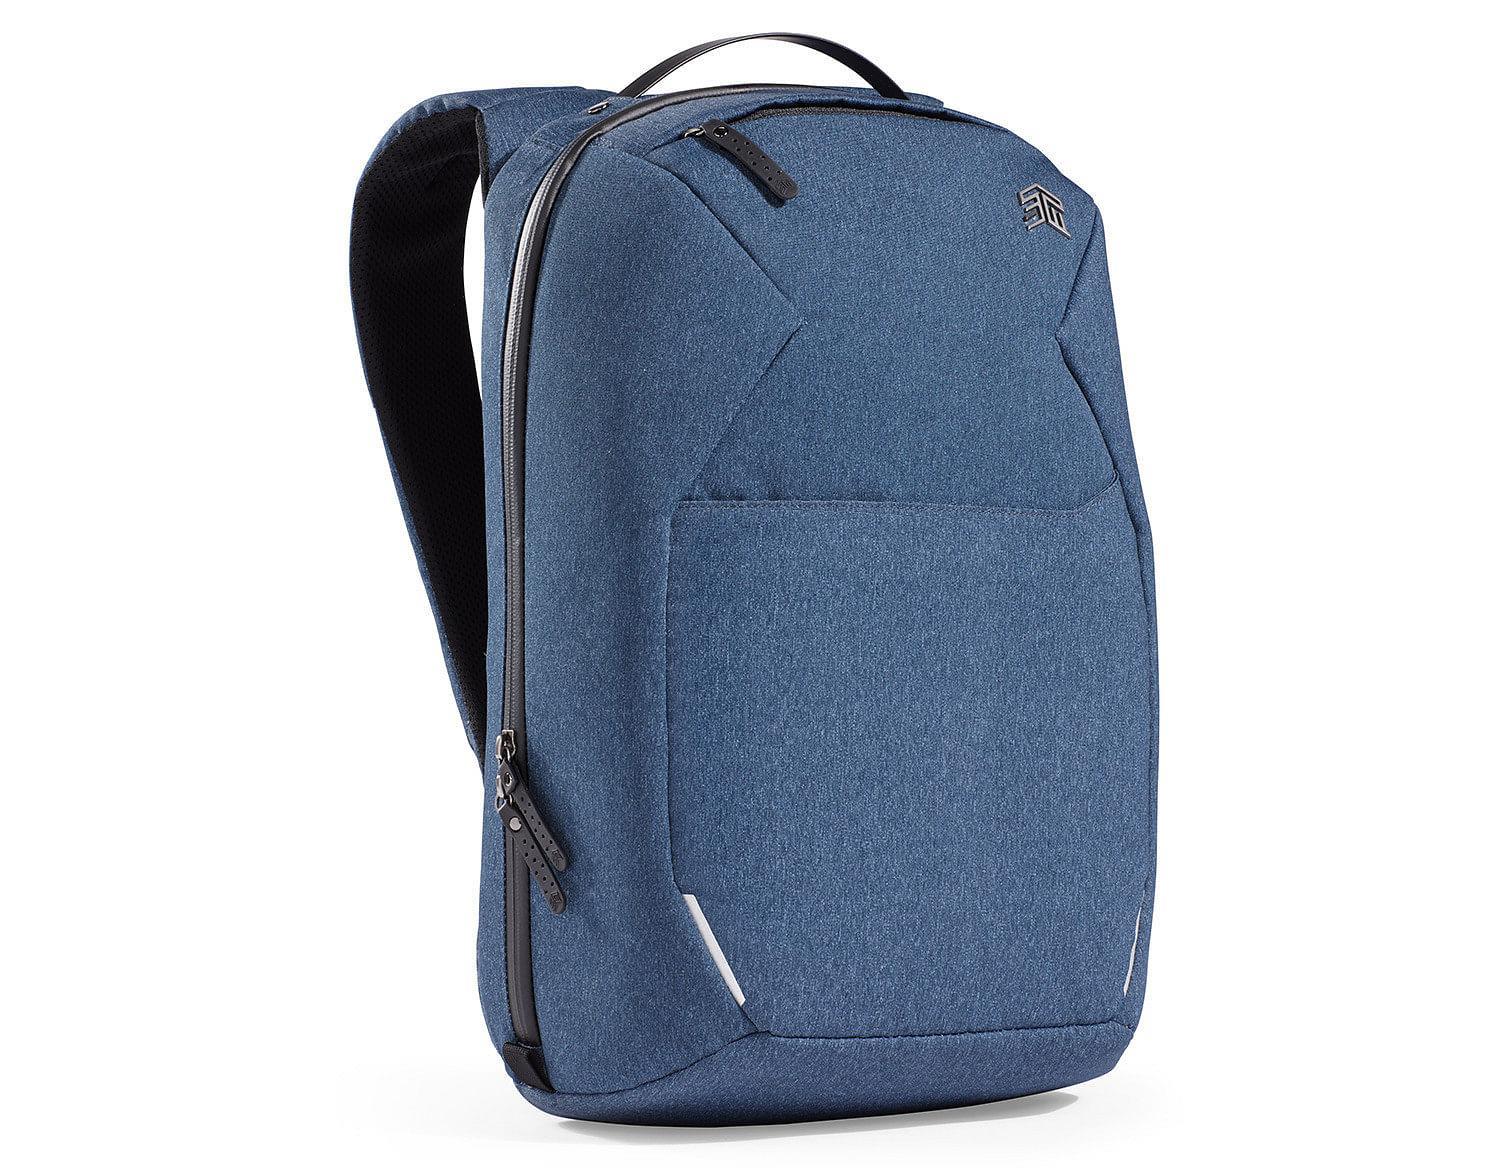 STM MYTH Backpack 18L 15" - Slate Blue [STM-117-186P-02]